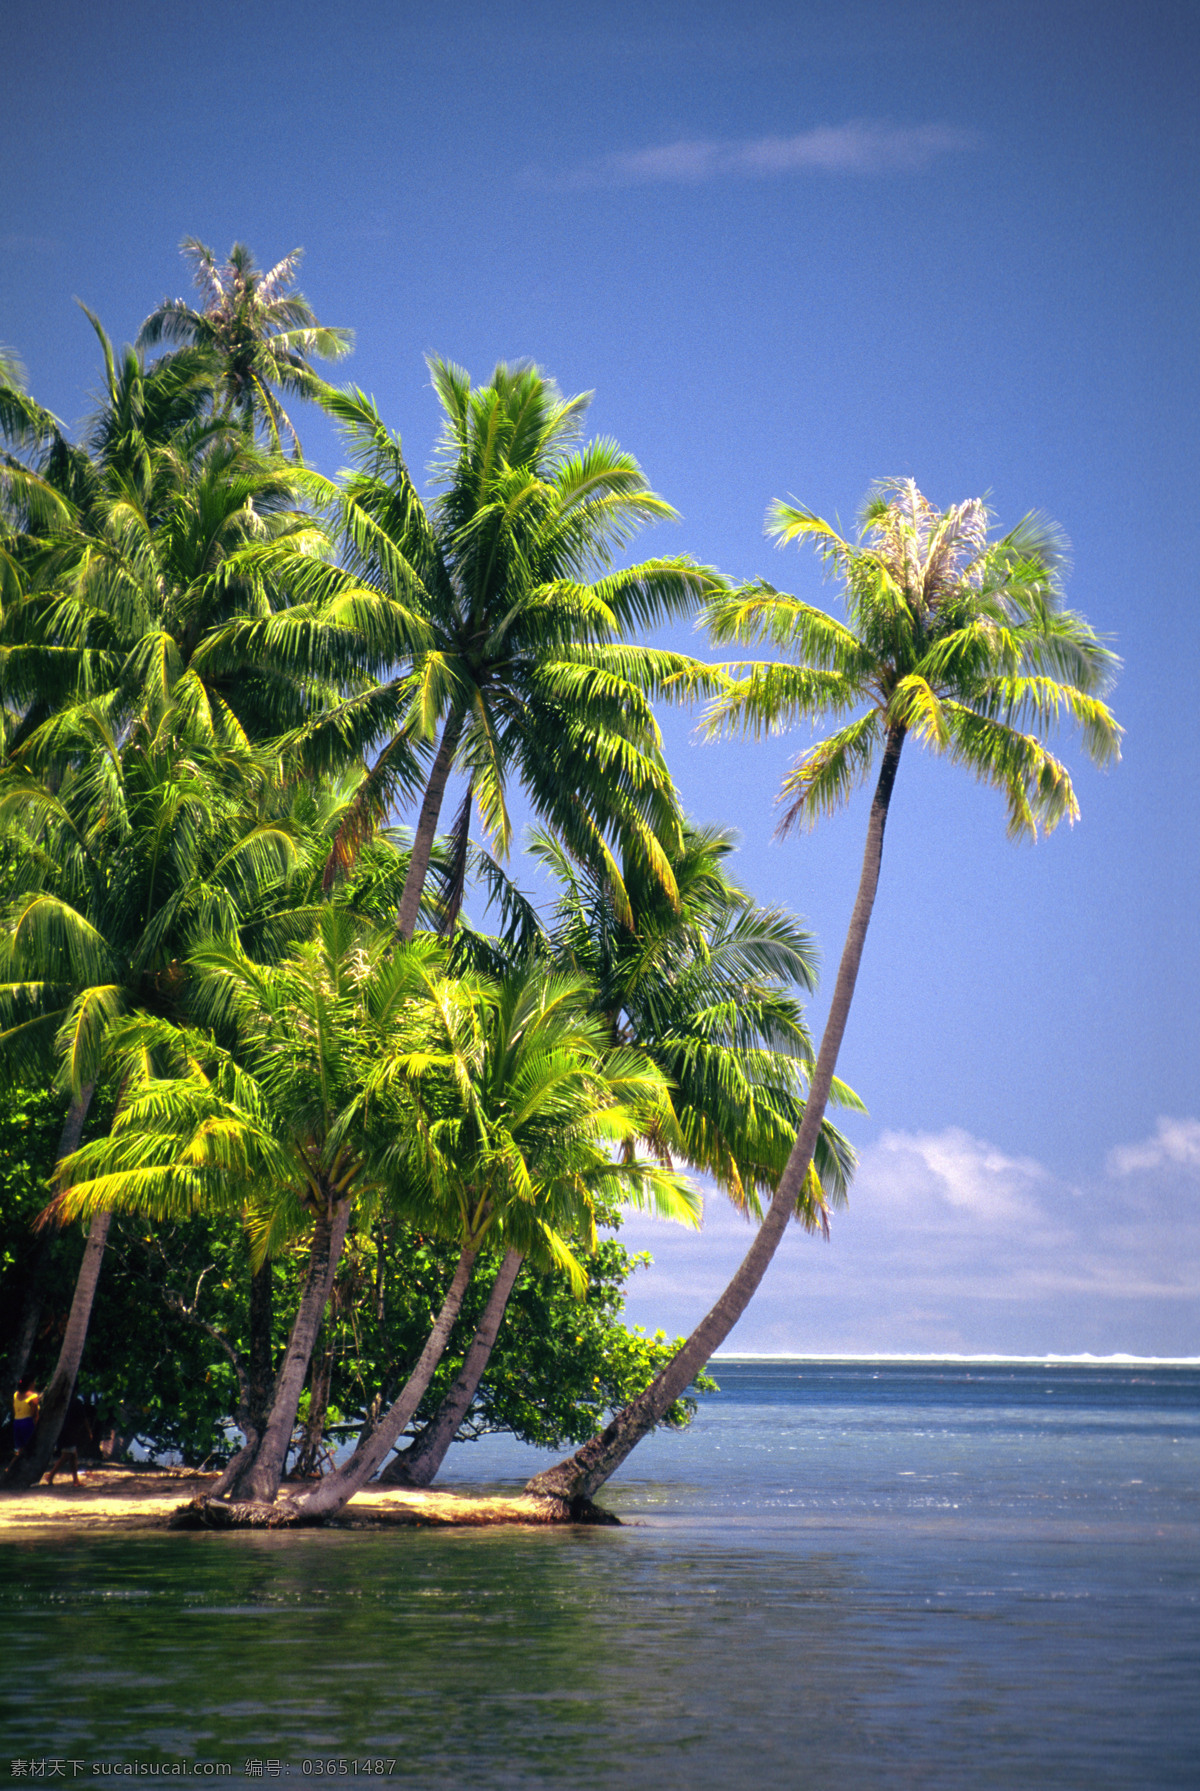 美丽 太平洋 风光图片 美丽海滩 海边风景 海岸风光 蓝天白云 沙滩 海滩 大海 海洋 海平面 椰子 椰树 度假 旅游景点 海景 景色 美景 风景 摄影图 高清图片 大海图片 风景图片